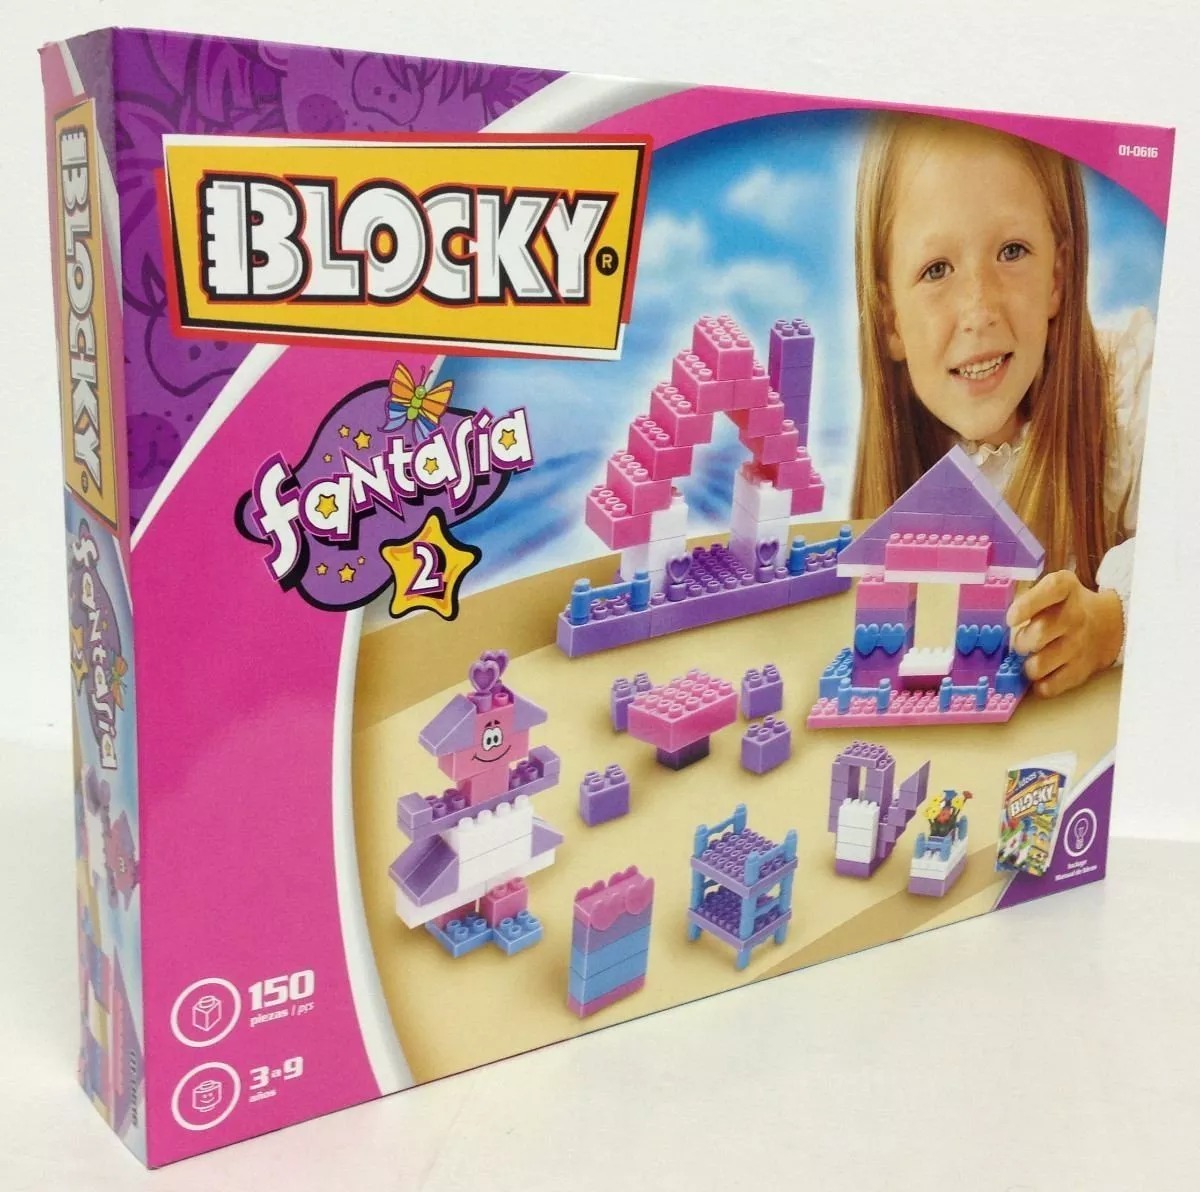 Blocky fantasia 2 x 150